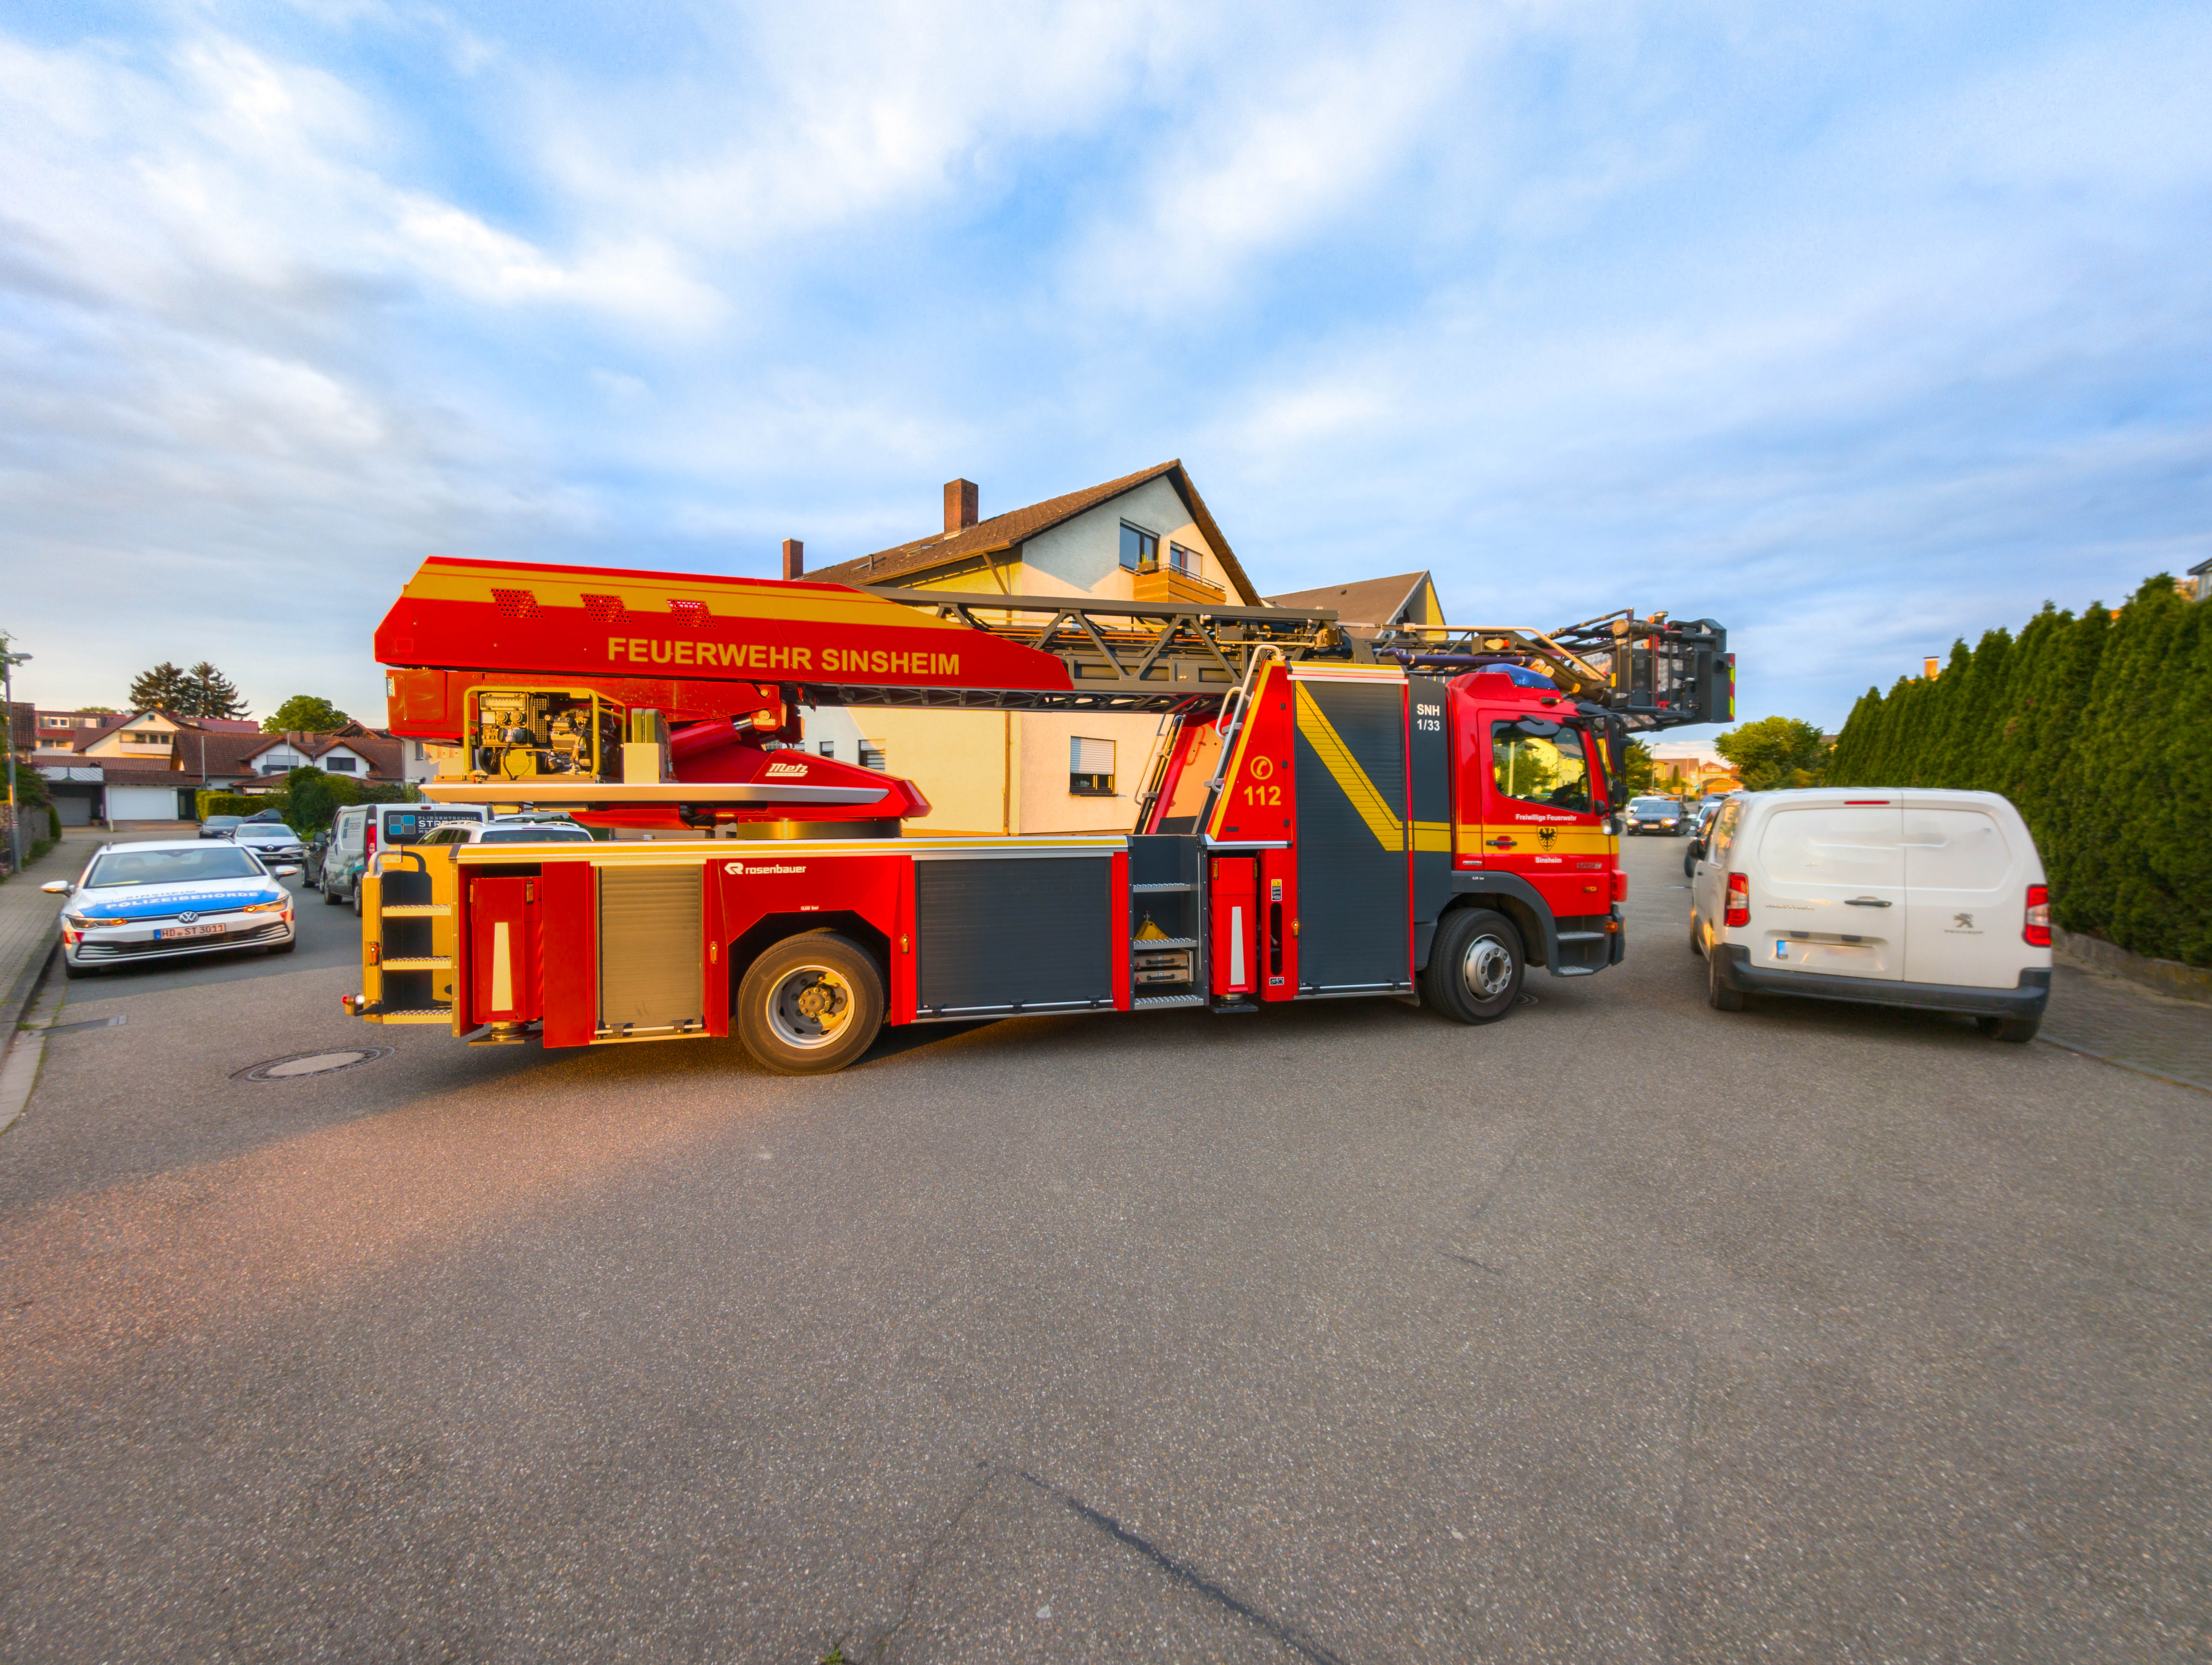 Blockierte Rettungswege und Falschparker: Testfahrt der Feuerwehr zeigt Problematik auf